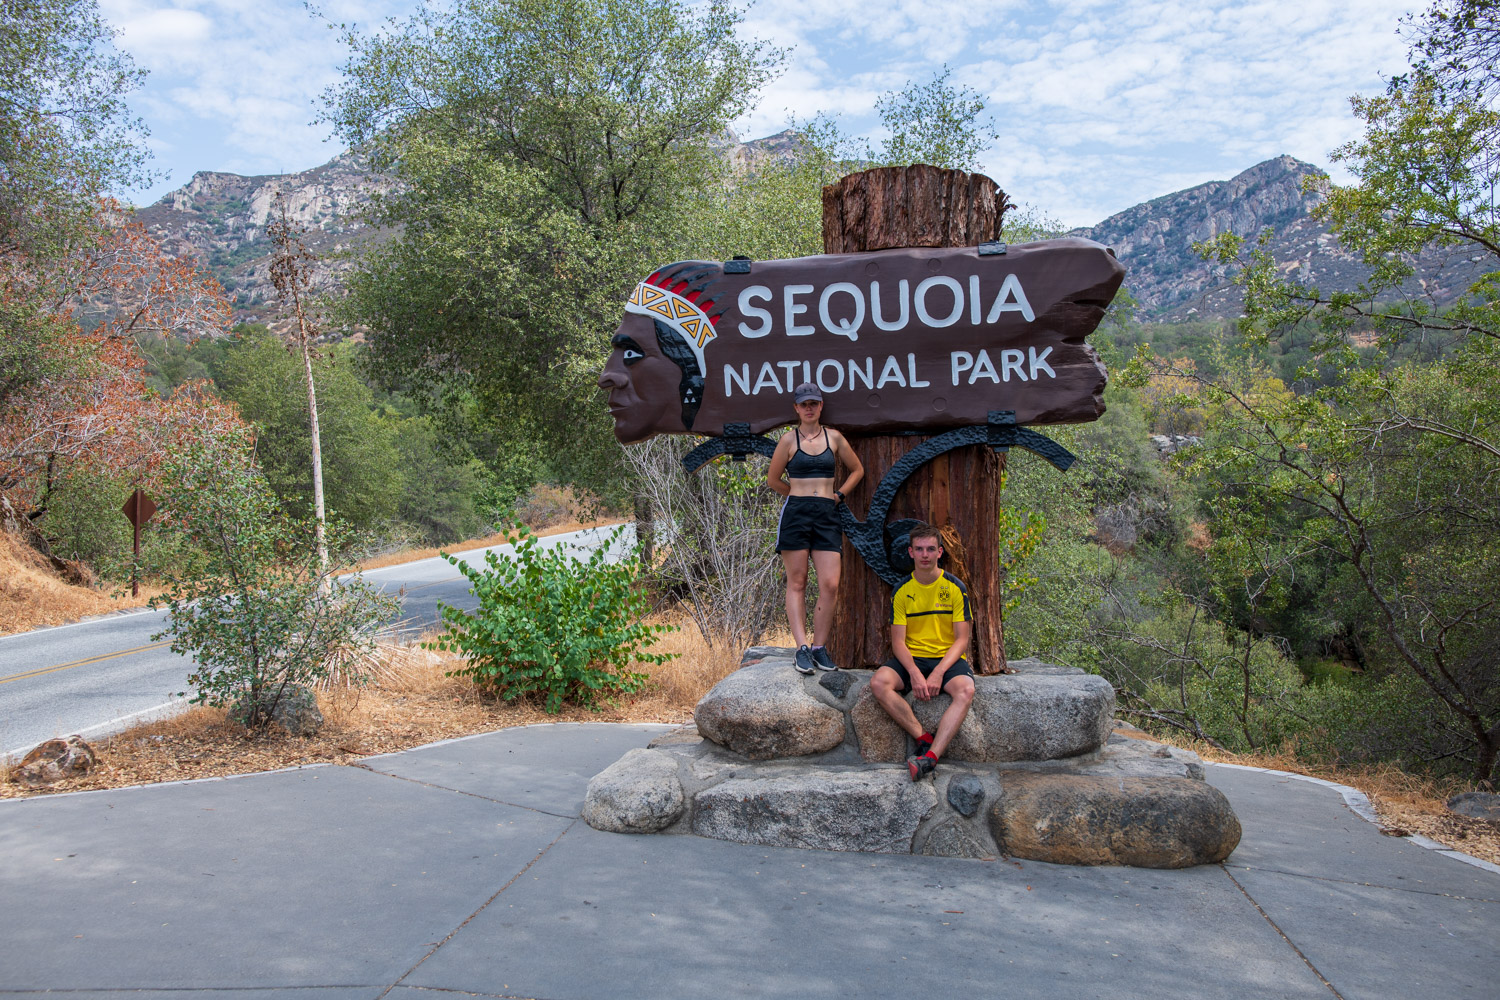 Im wilden Westen der USA | Teil 4: Die Bären und Bäume im Sequoia National Park